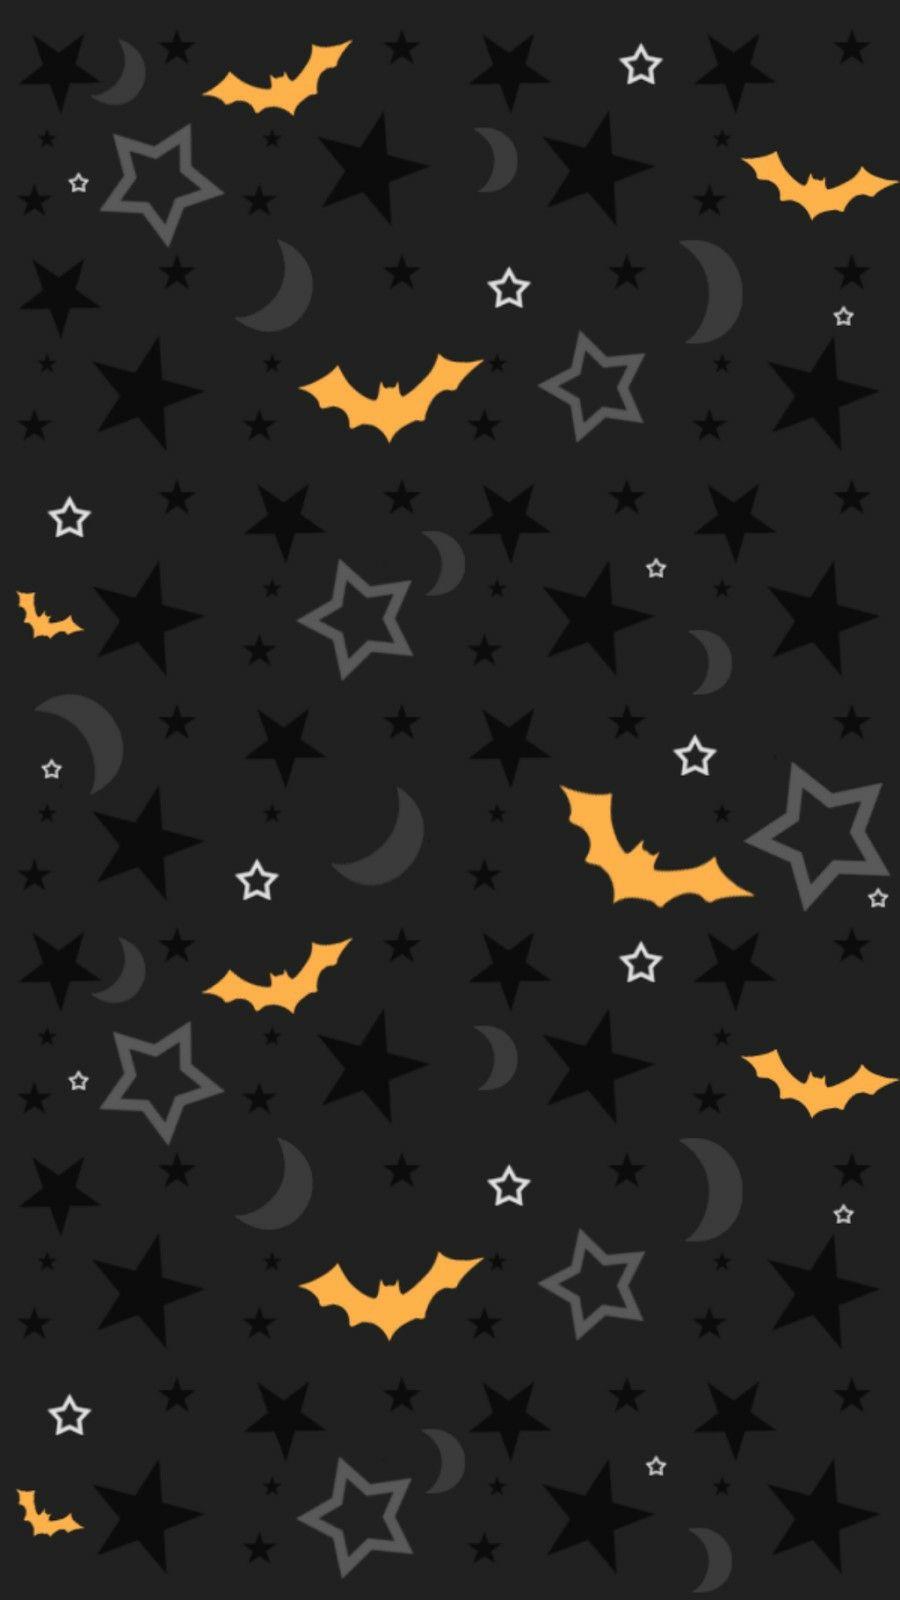 Halloween iPhone wallpaper. Halloween // Halloweenily.com